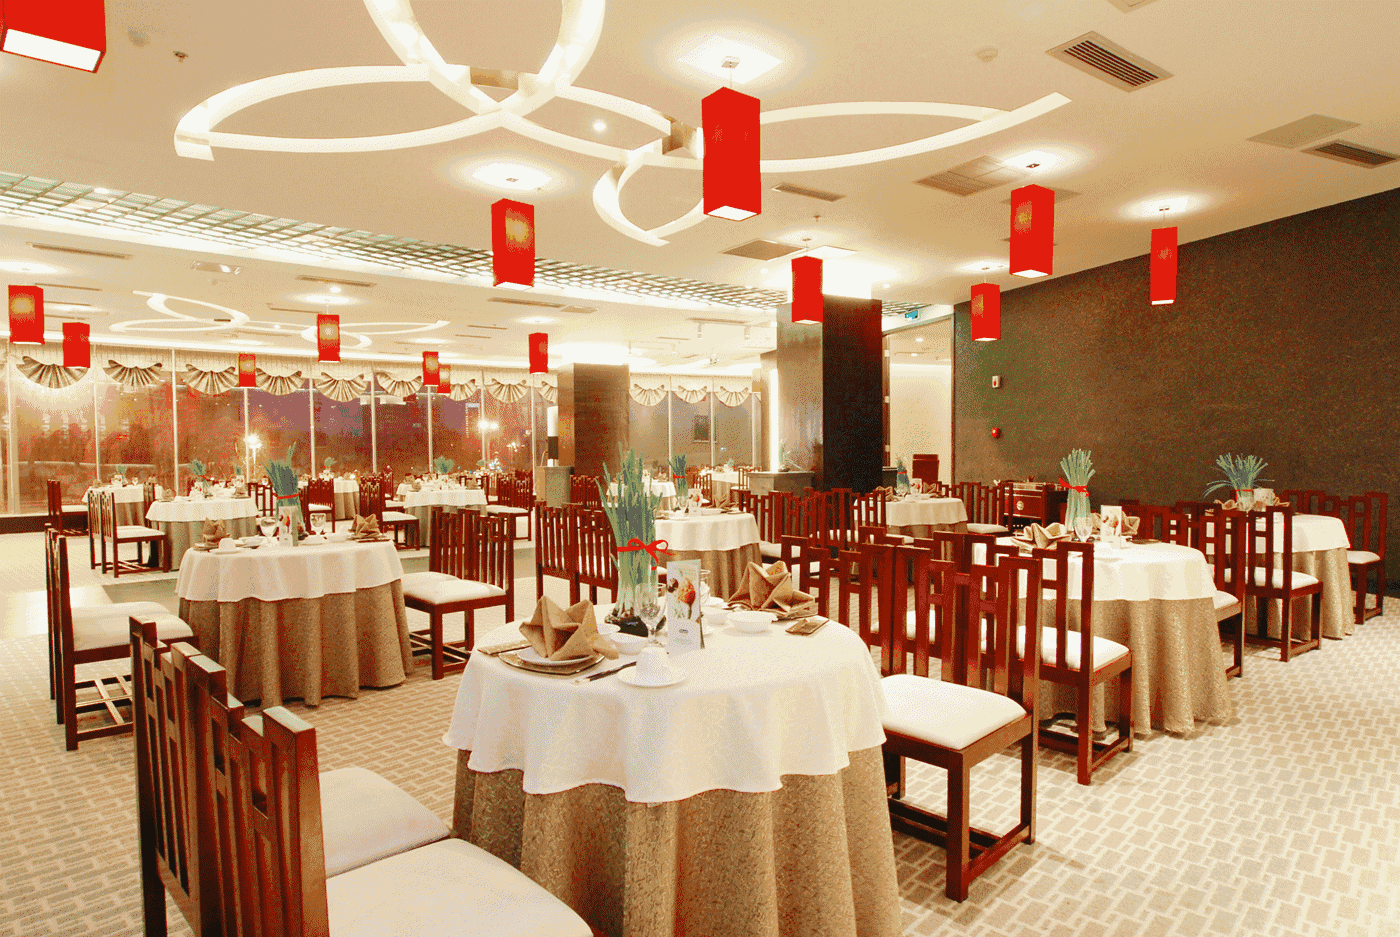 忠县高档点的中餐厅图片